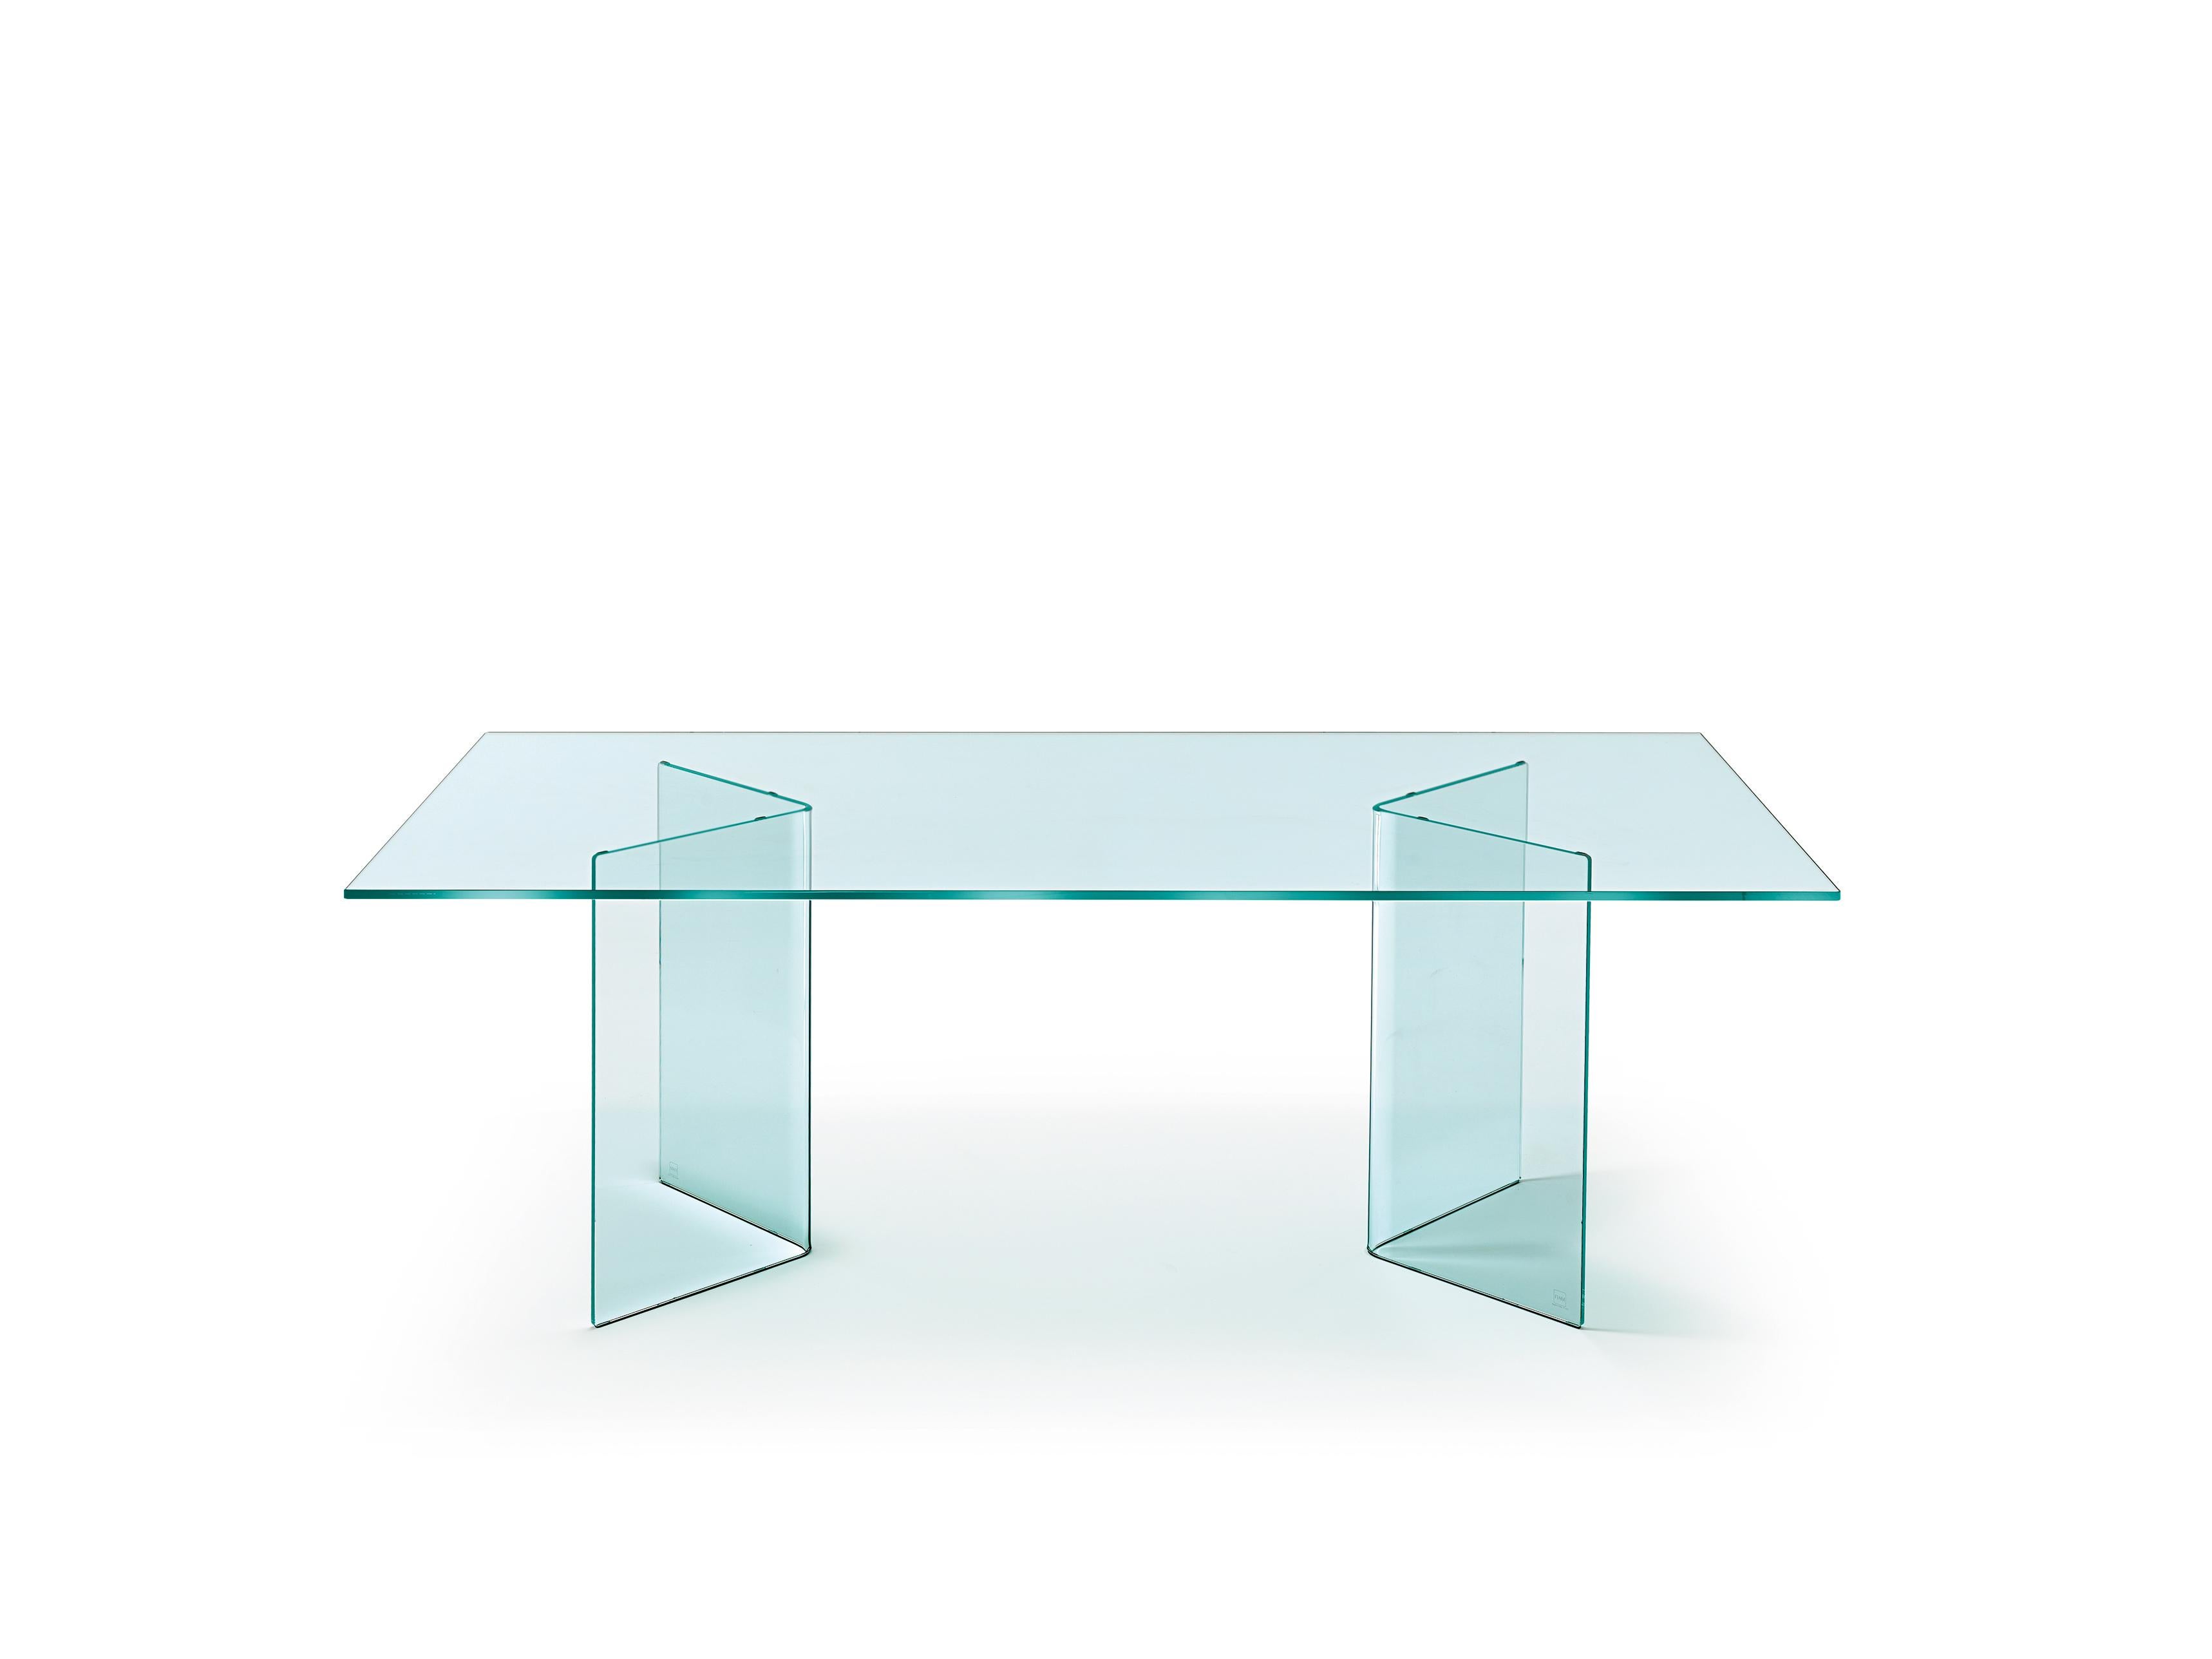 Tisch mit 12 mm starkem, gebogenem Glasfuß (Seitenlänge 45 cm) und 15 mm starker, gehärteter Glasplatte.
 